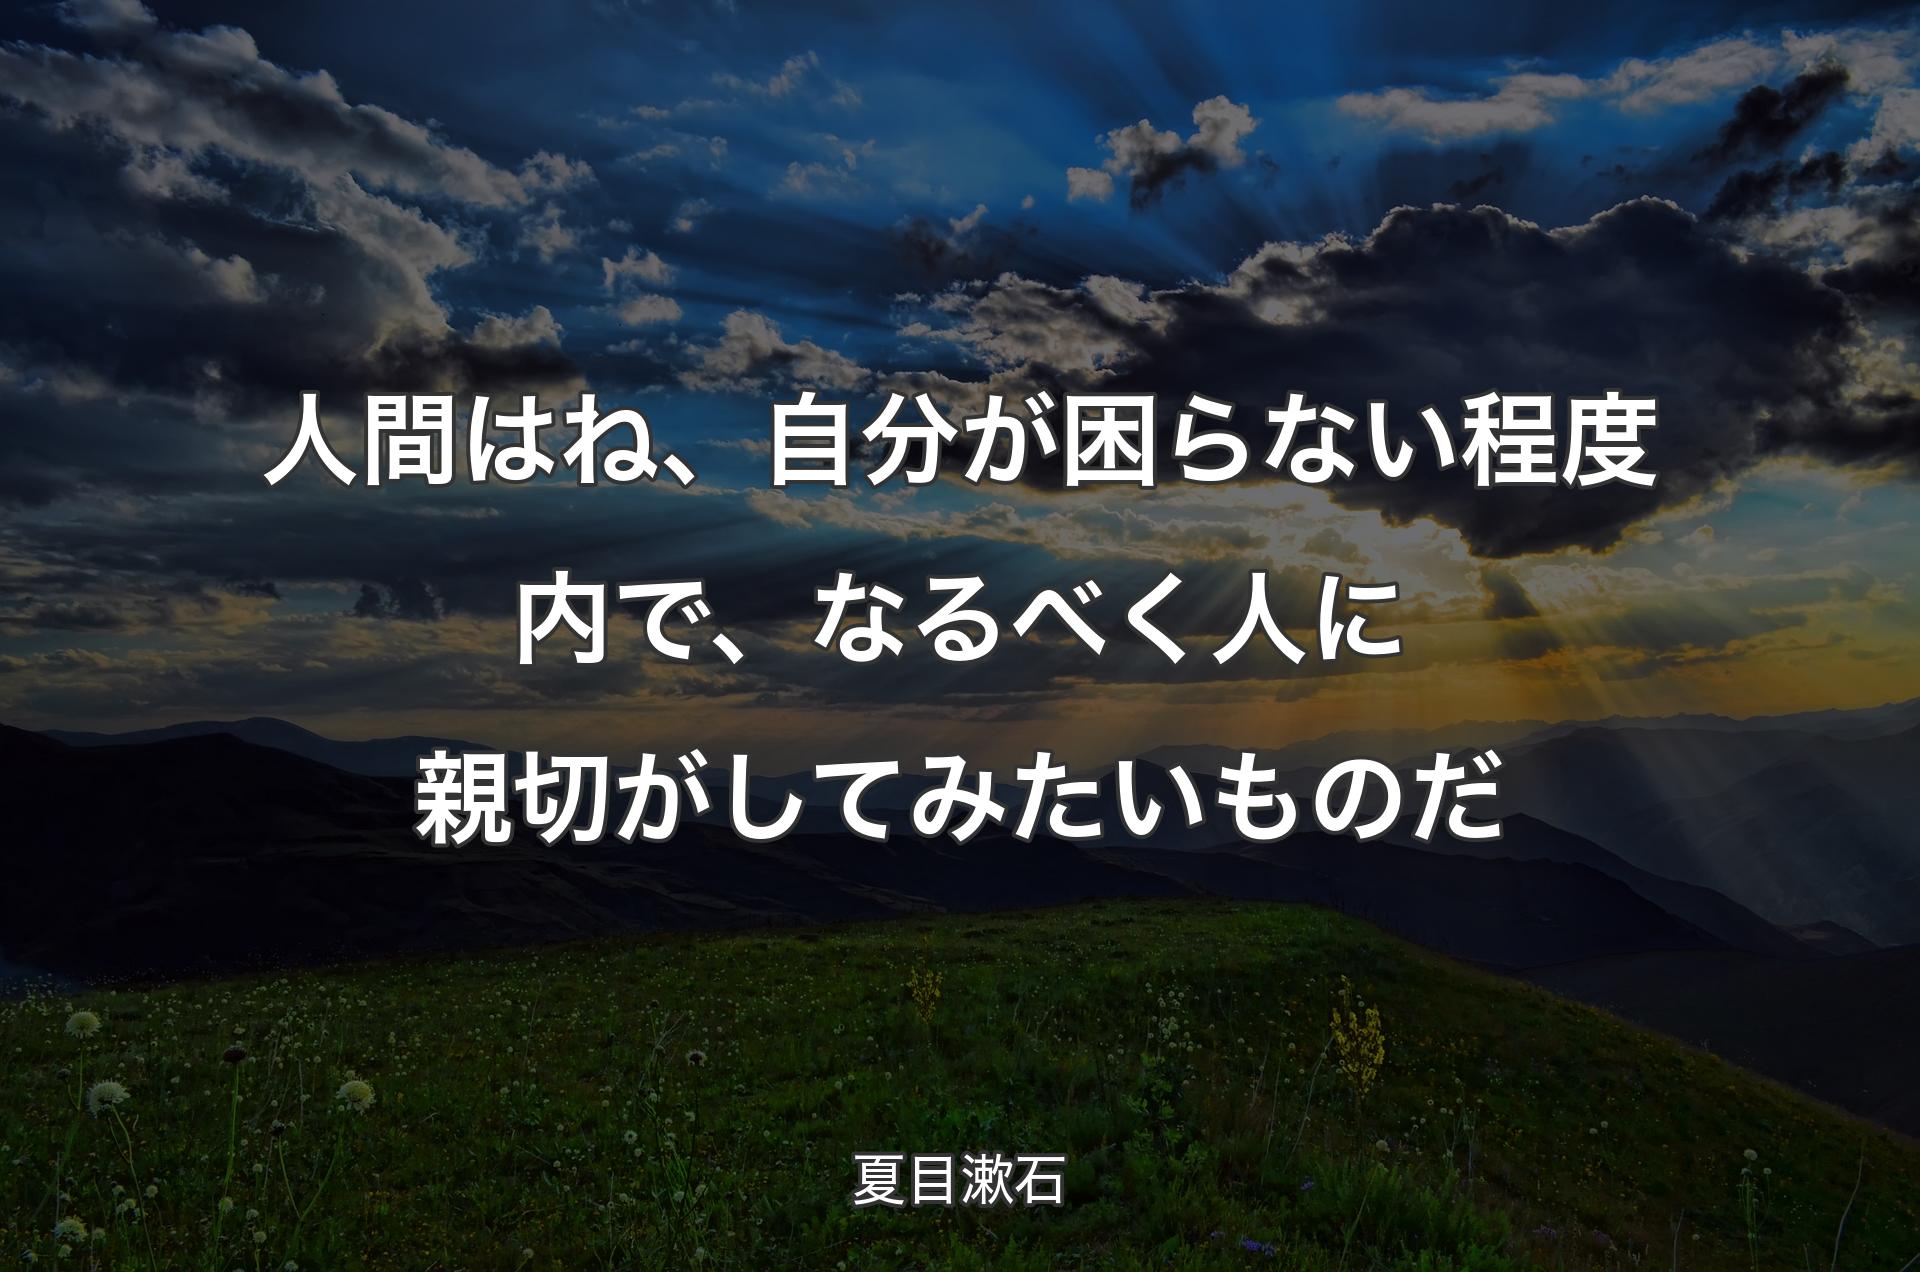 人間はね、自分が困らない程度内で、なるべく人に親切がしてみたいものだ - 夏目漱石